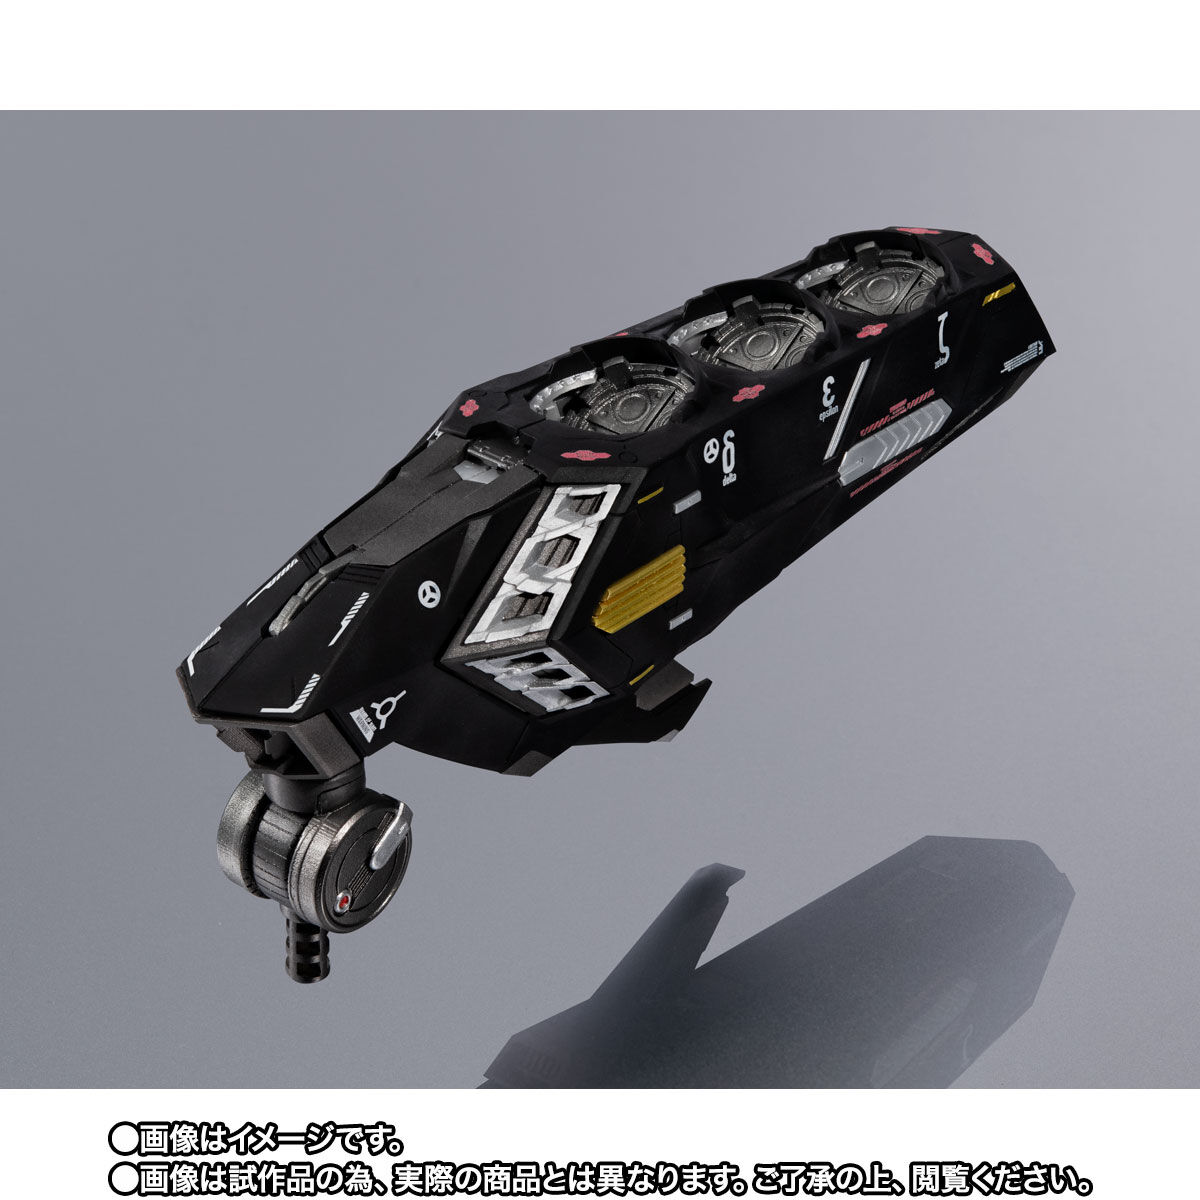 【限定販売】METAL STRUCTURE 解体匠機『MSN-04 サザビー専用オプションパーツ レウルーララボラトリー』機動戦士ガンダム オプションパーツ-006